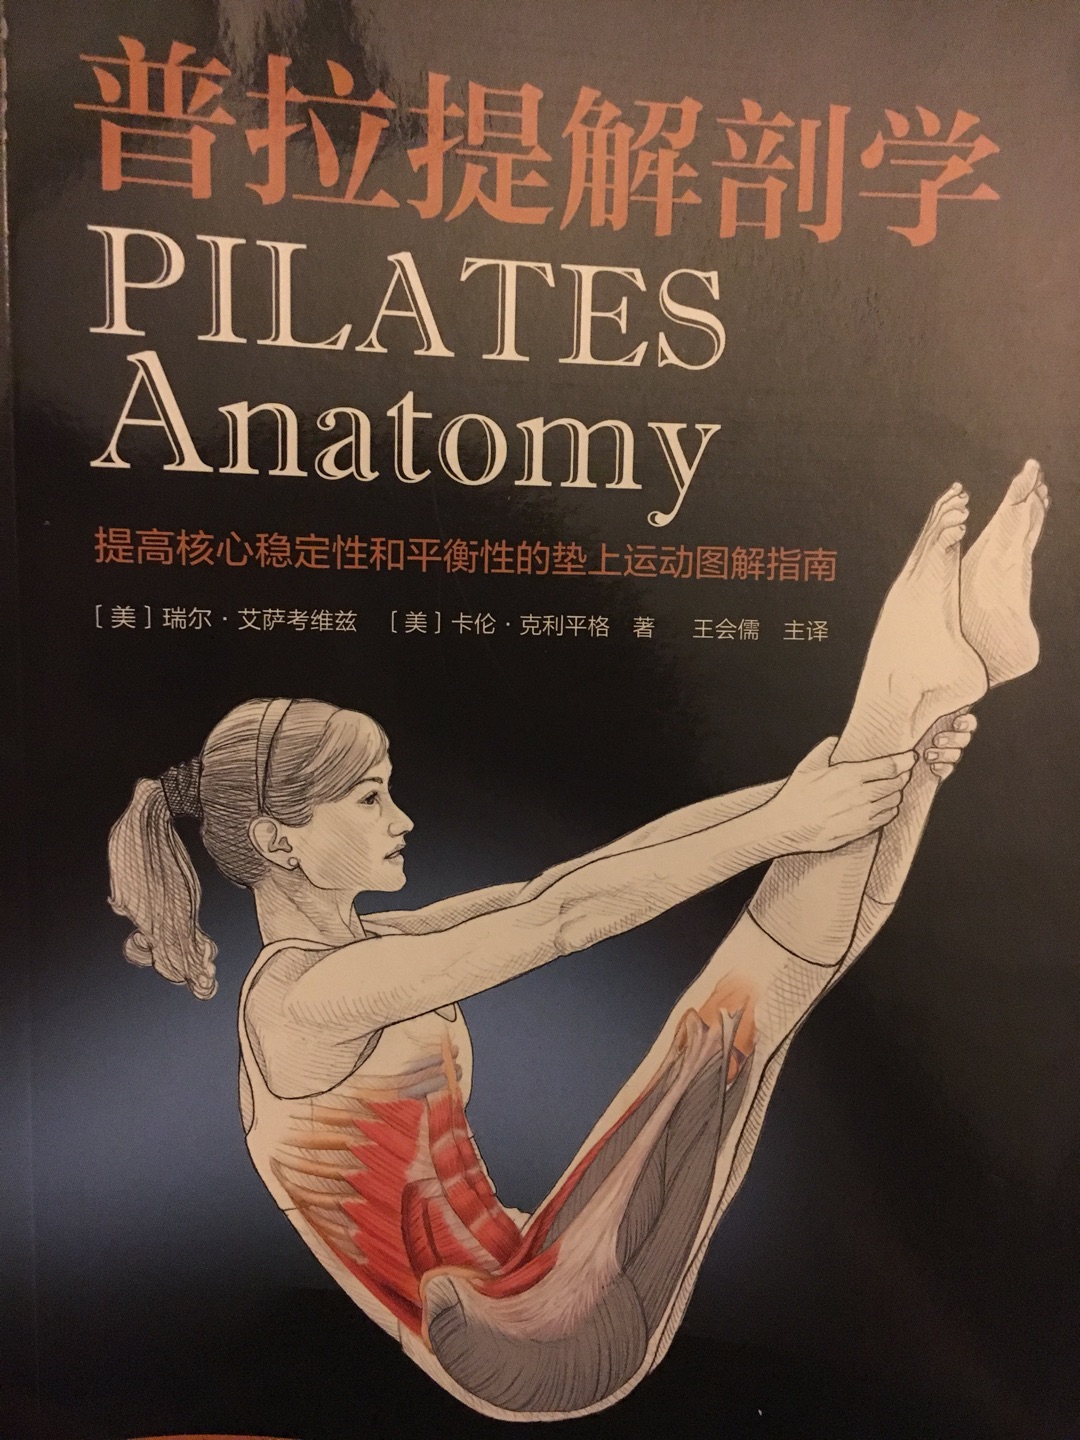 准备研究下运动生理学，普拉提是很好的运动，这本书分解得很详细，不错不错。